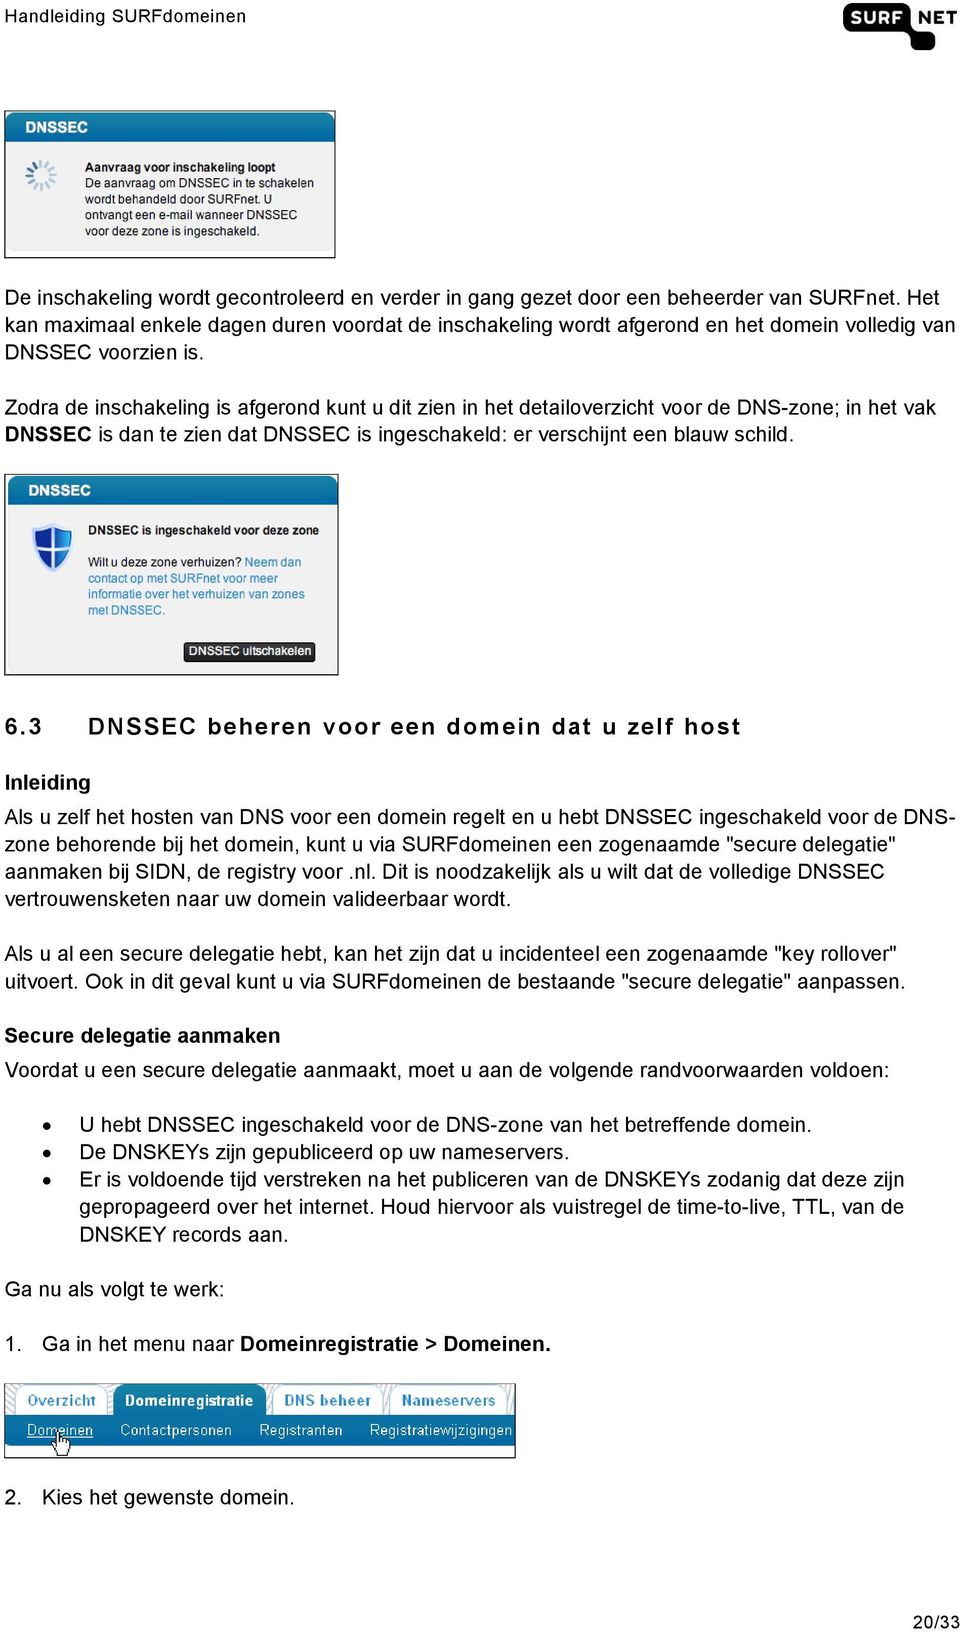 Zodra de inschakeling is afgerond kunt u dit zien in het detailoverzicht voor de DNS-zone; in het vak DNSSEC is dan te zien dat DNSSEC is ingeschakeld: er verschijnt een blauw schild. 6.